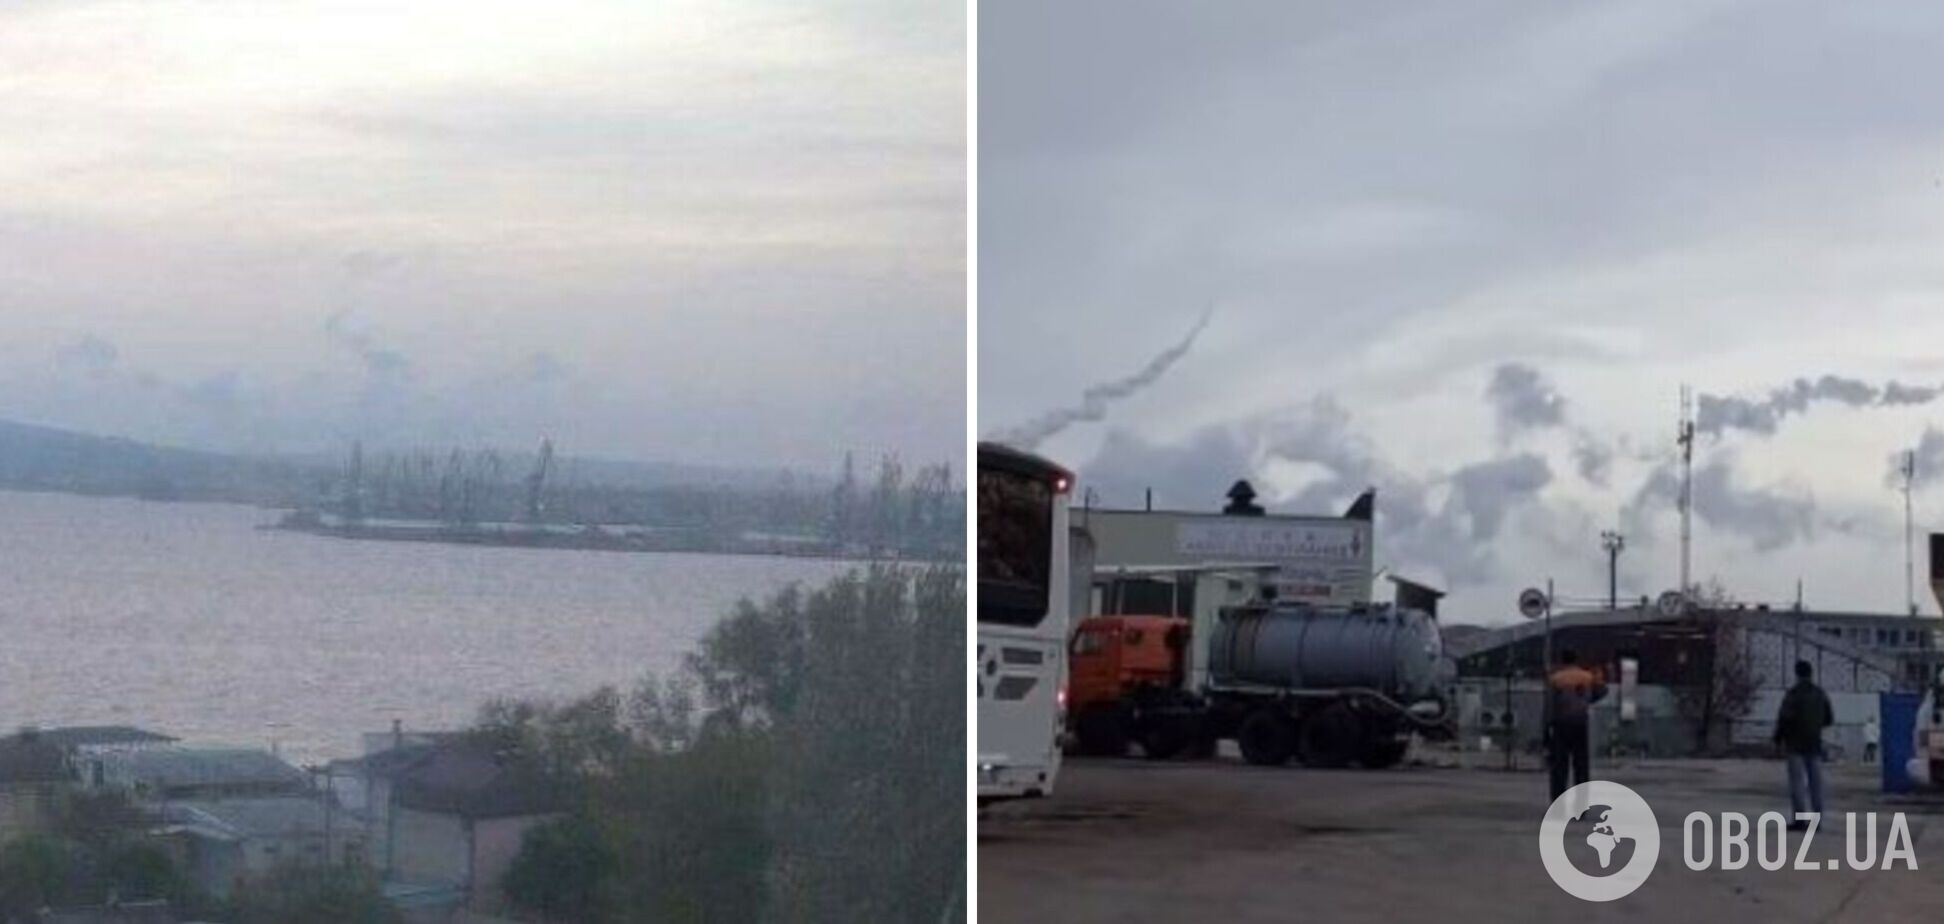 Україна атакувала військові об'єкти РФ у Керчі: поцілила у суднобудівний завод 'Залів' і ракетний катер проєкту 'Каракурт'. Фото і відео